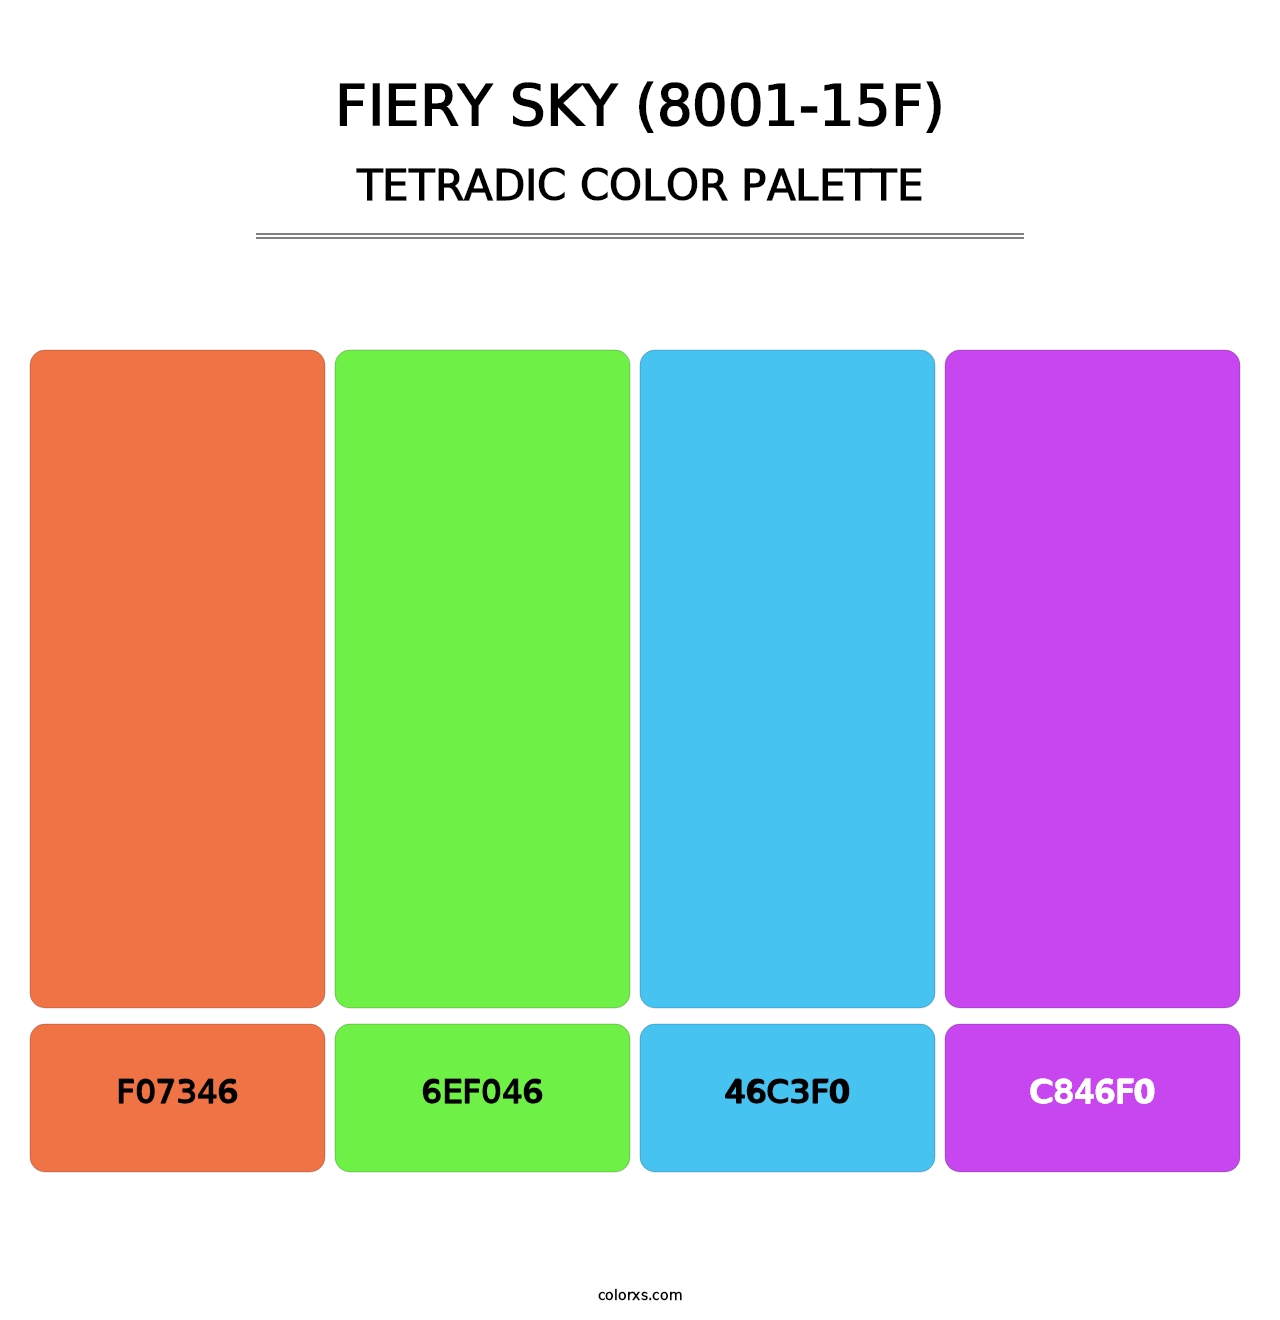 Fiery Sky (8001-15F) - Tetradic Color Palette